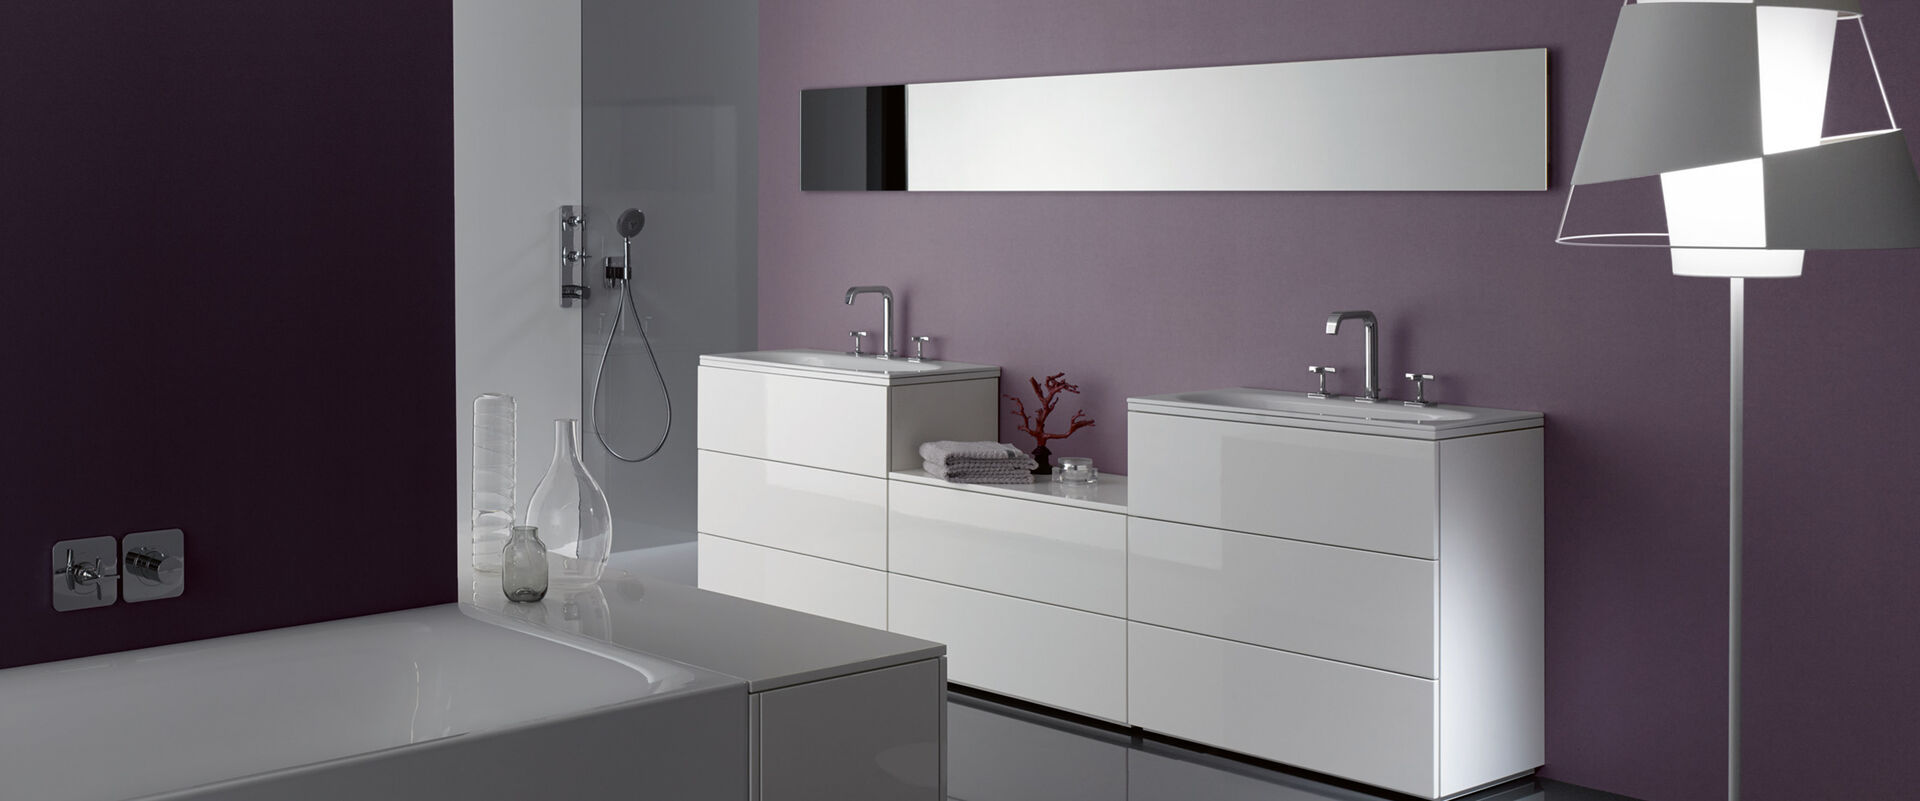 Weißes Sideboard für das Bad mit Staufächern und Auszügen vor einer violetten Wand.